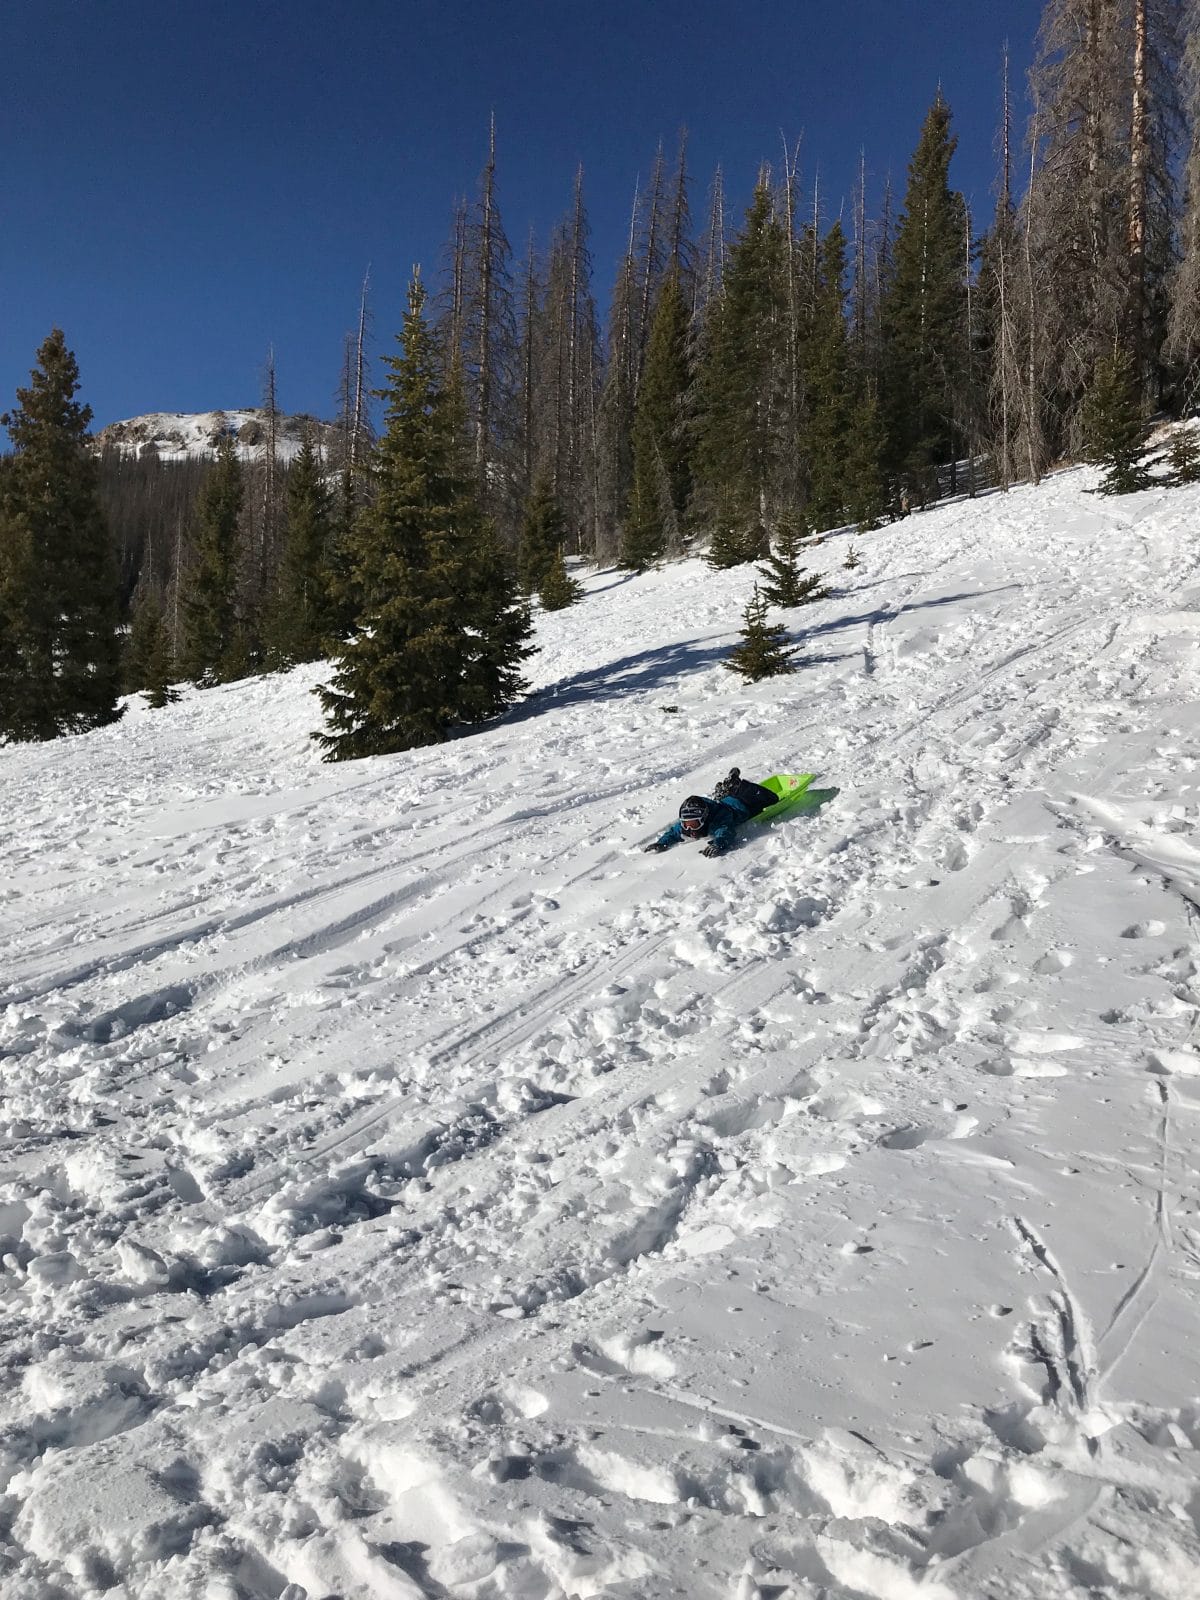 Family ski trip with toddler - sledding